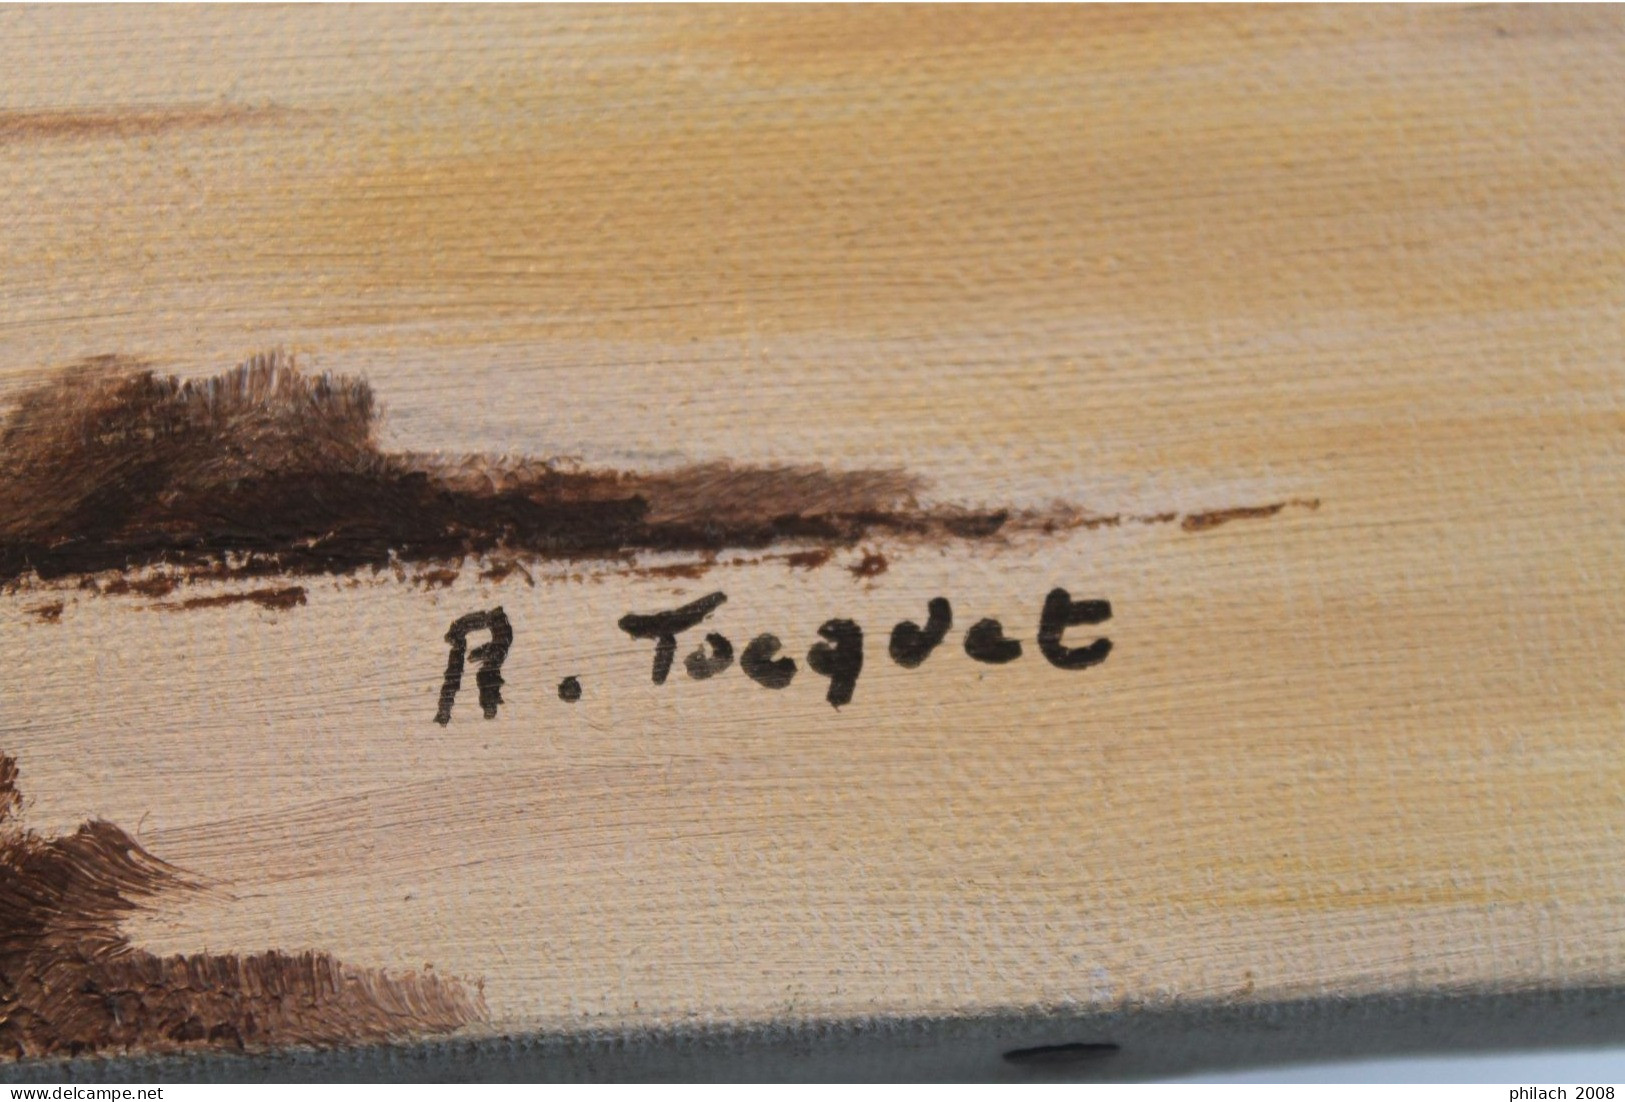 Tableau Marine signé R. Tocquet